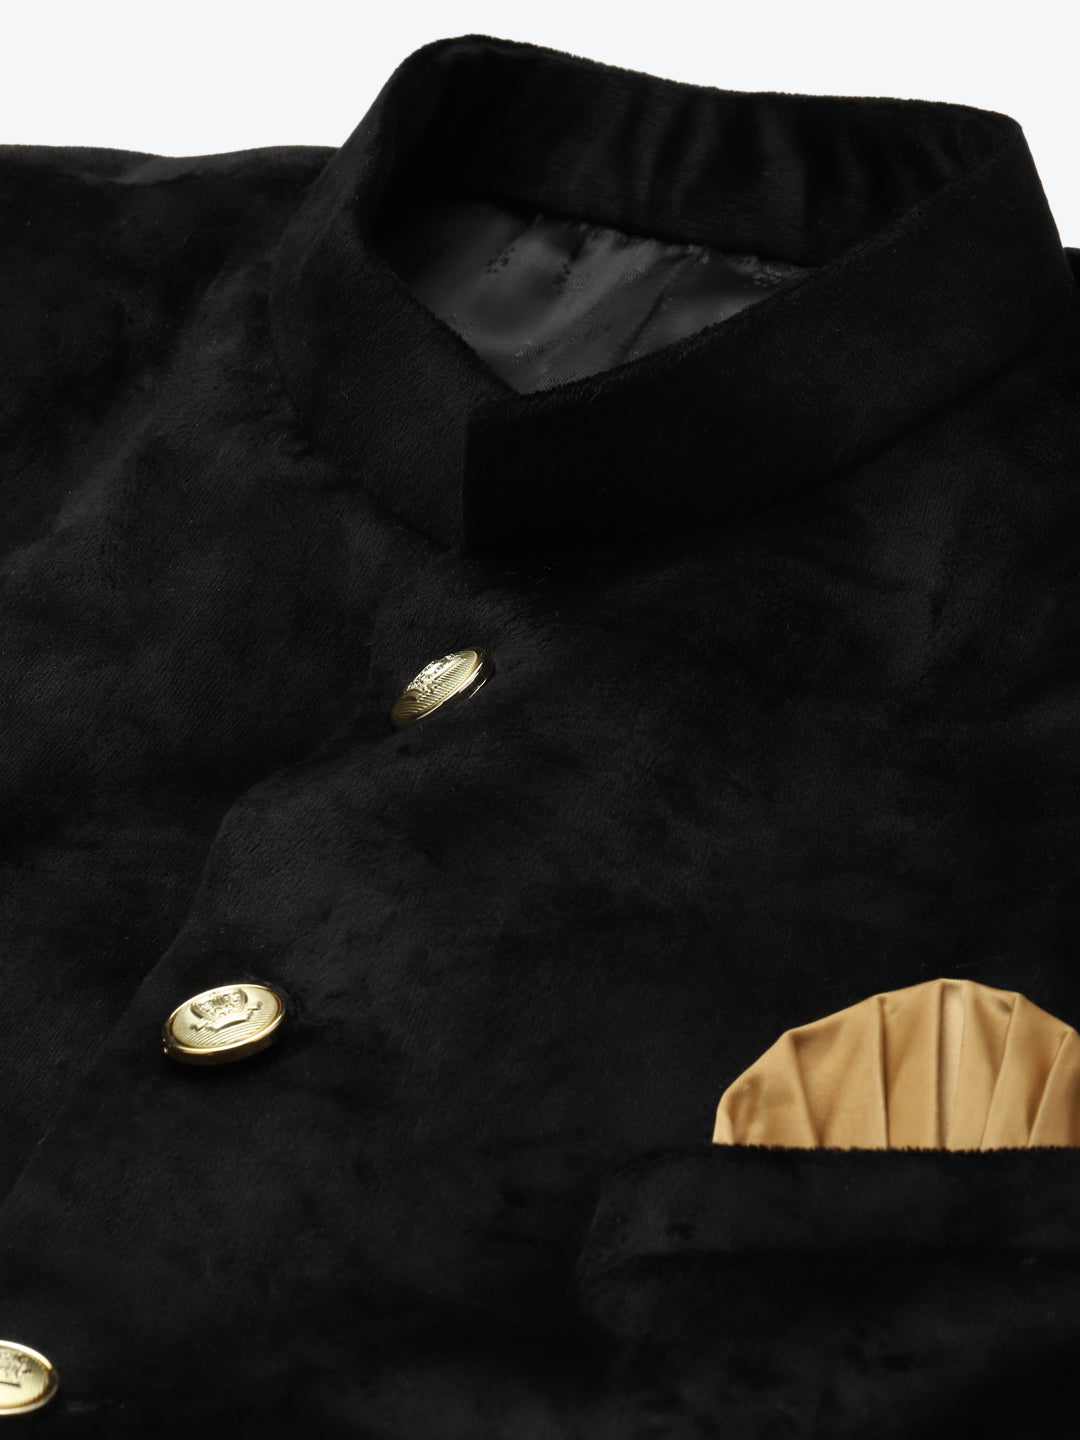 Luxrio Blazer Velvet Tuxedo for Men Black